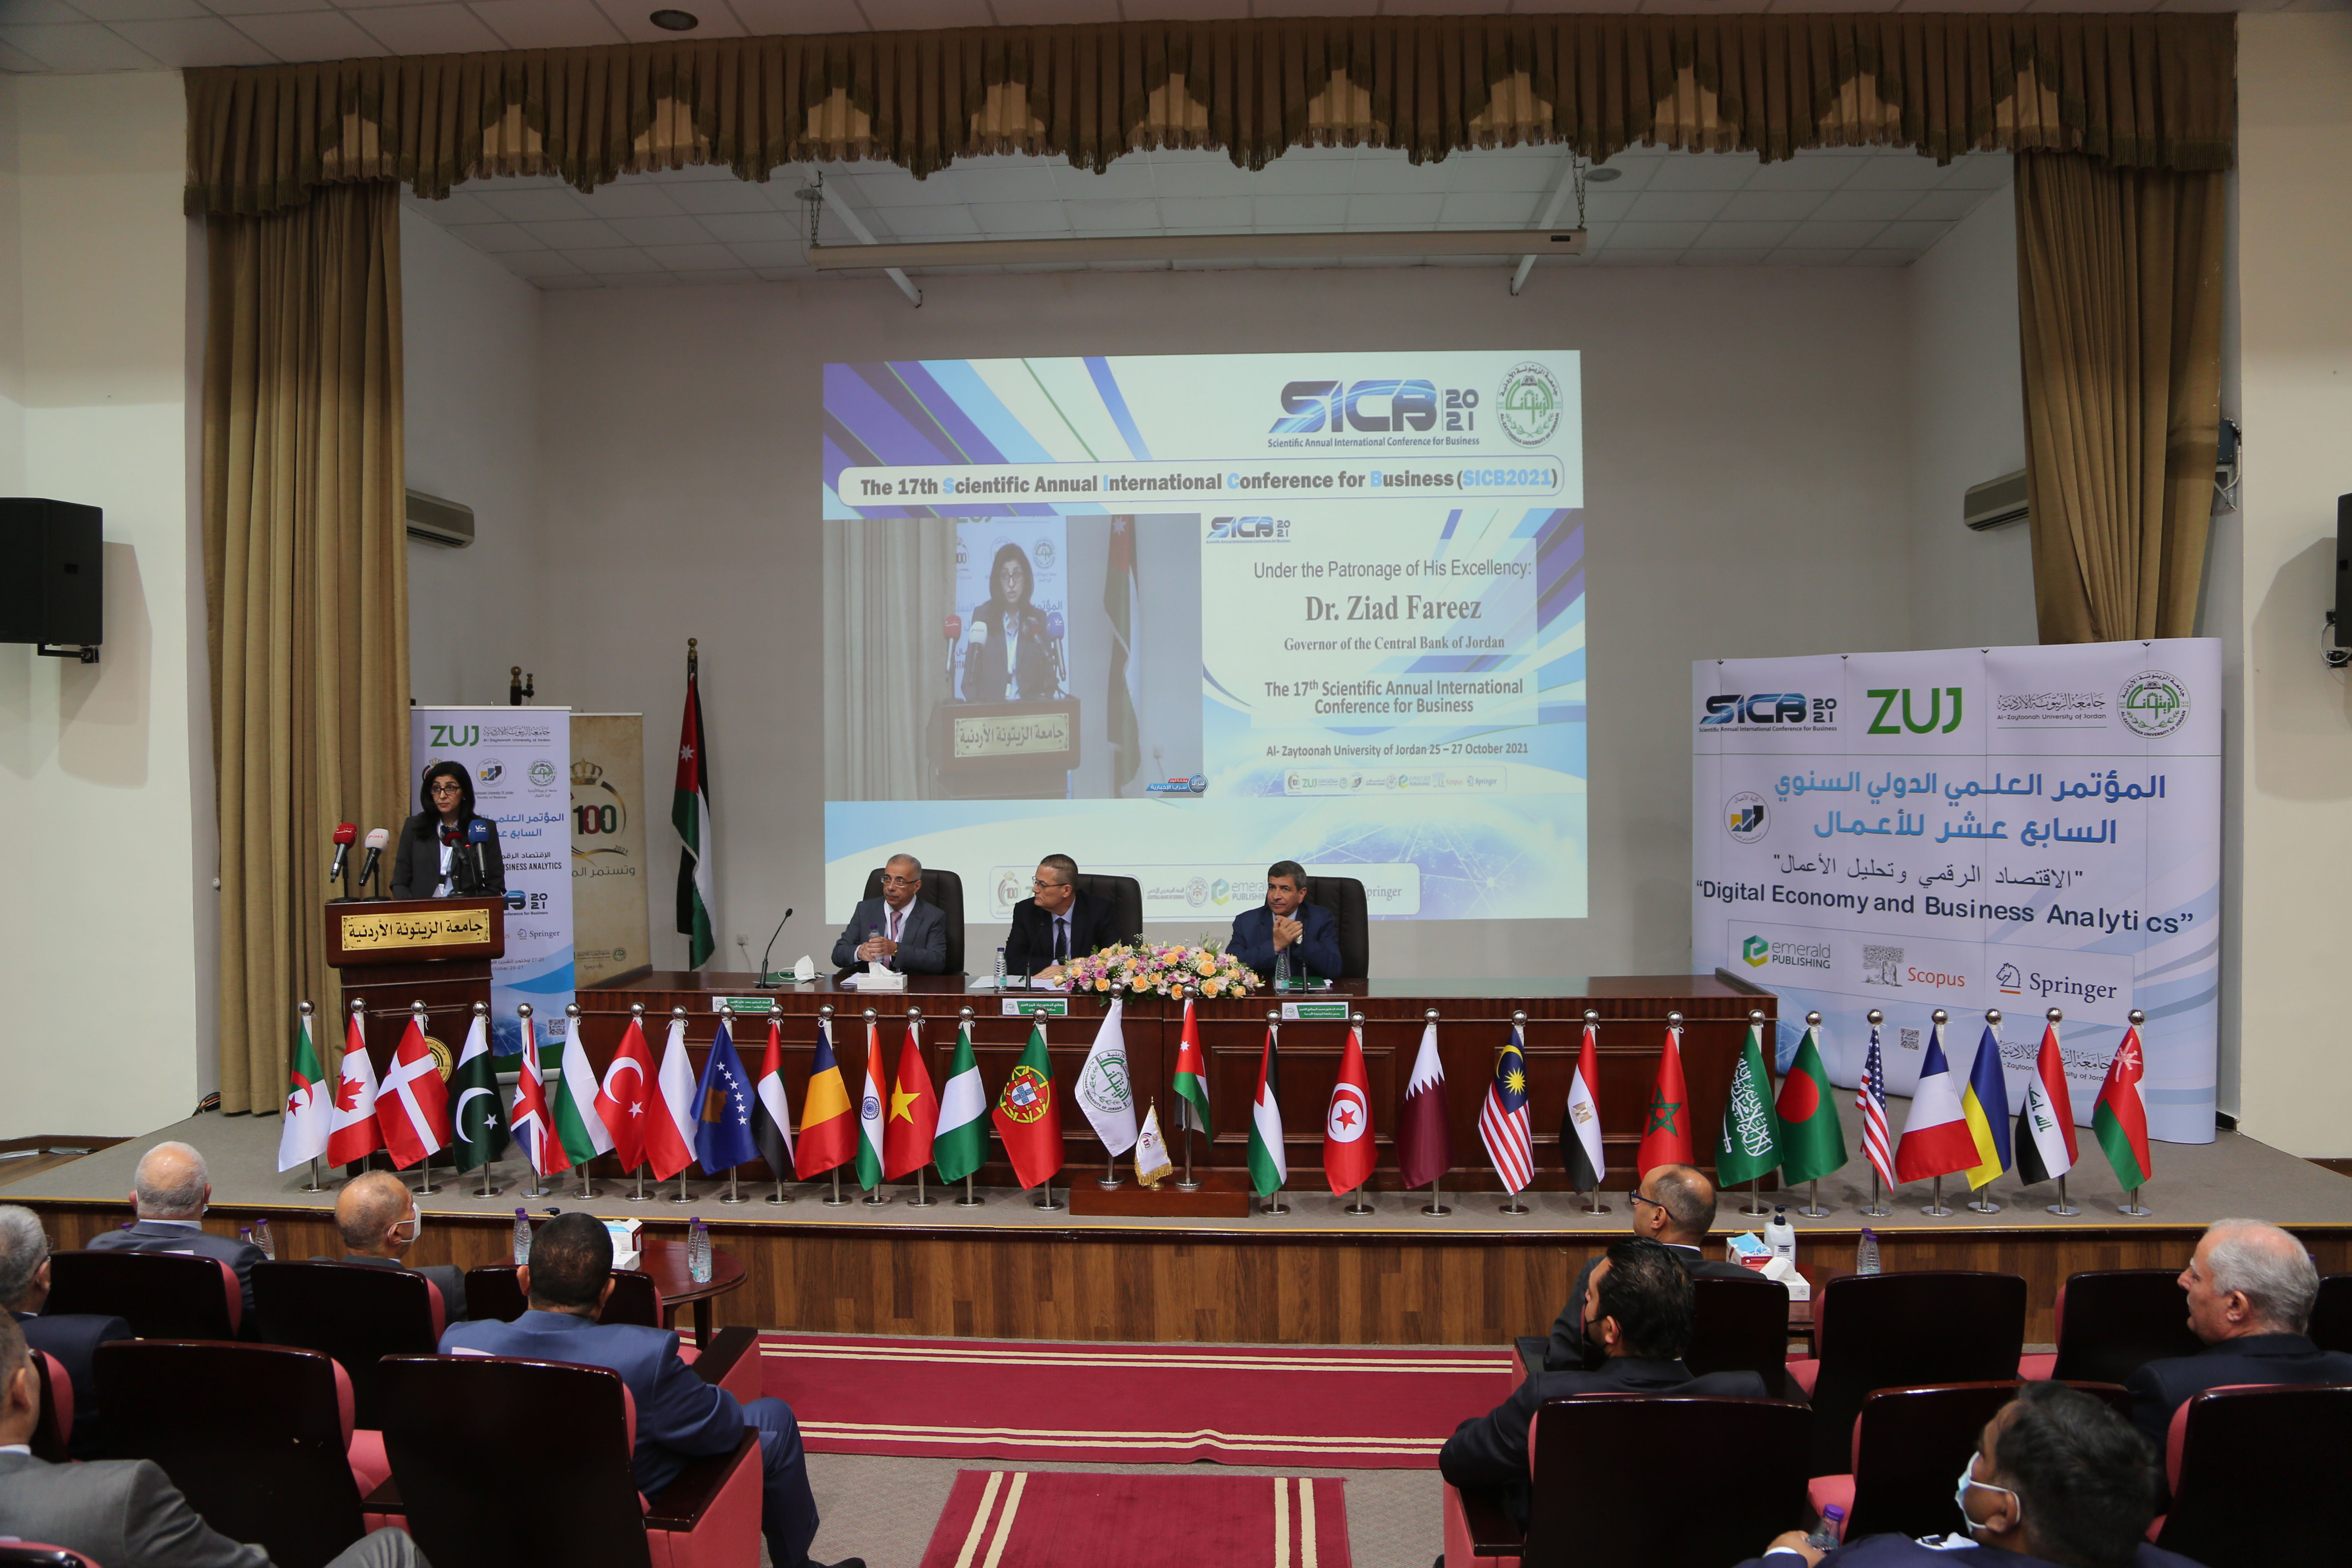 بالصور  ..  افتتاح مؤتمر الاقتصاد الرقمي وتحليل الأعمال في جامعة الزيتونة الأردنية 